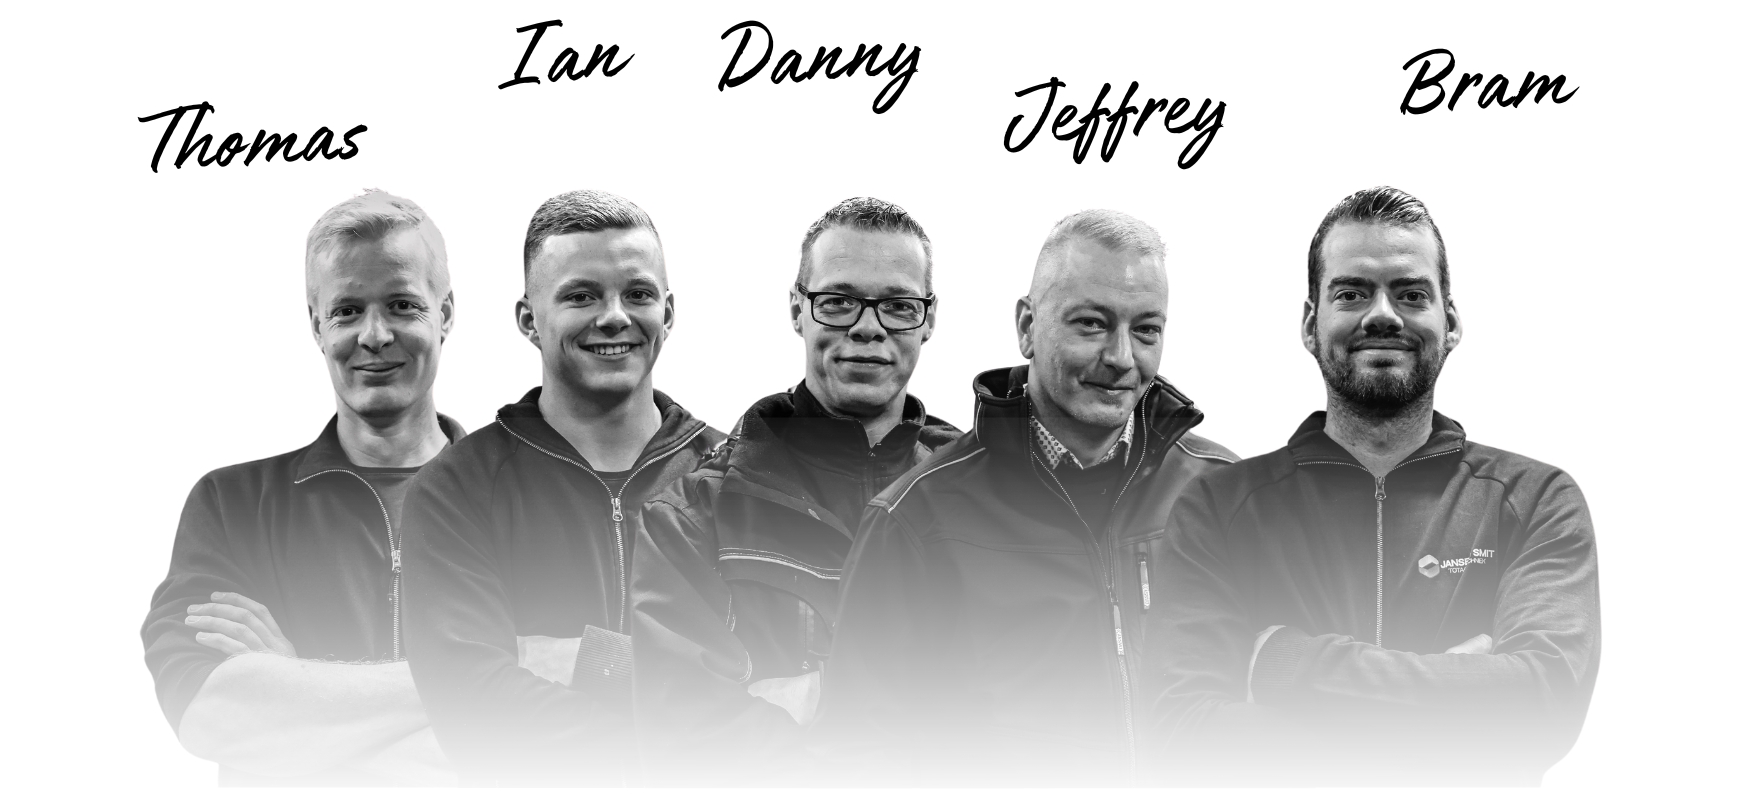 Team foto van het team van Jansen-Smit met Thomas, Ian, Danny, Jeffrey en Bram.